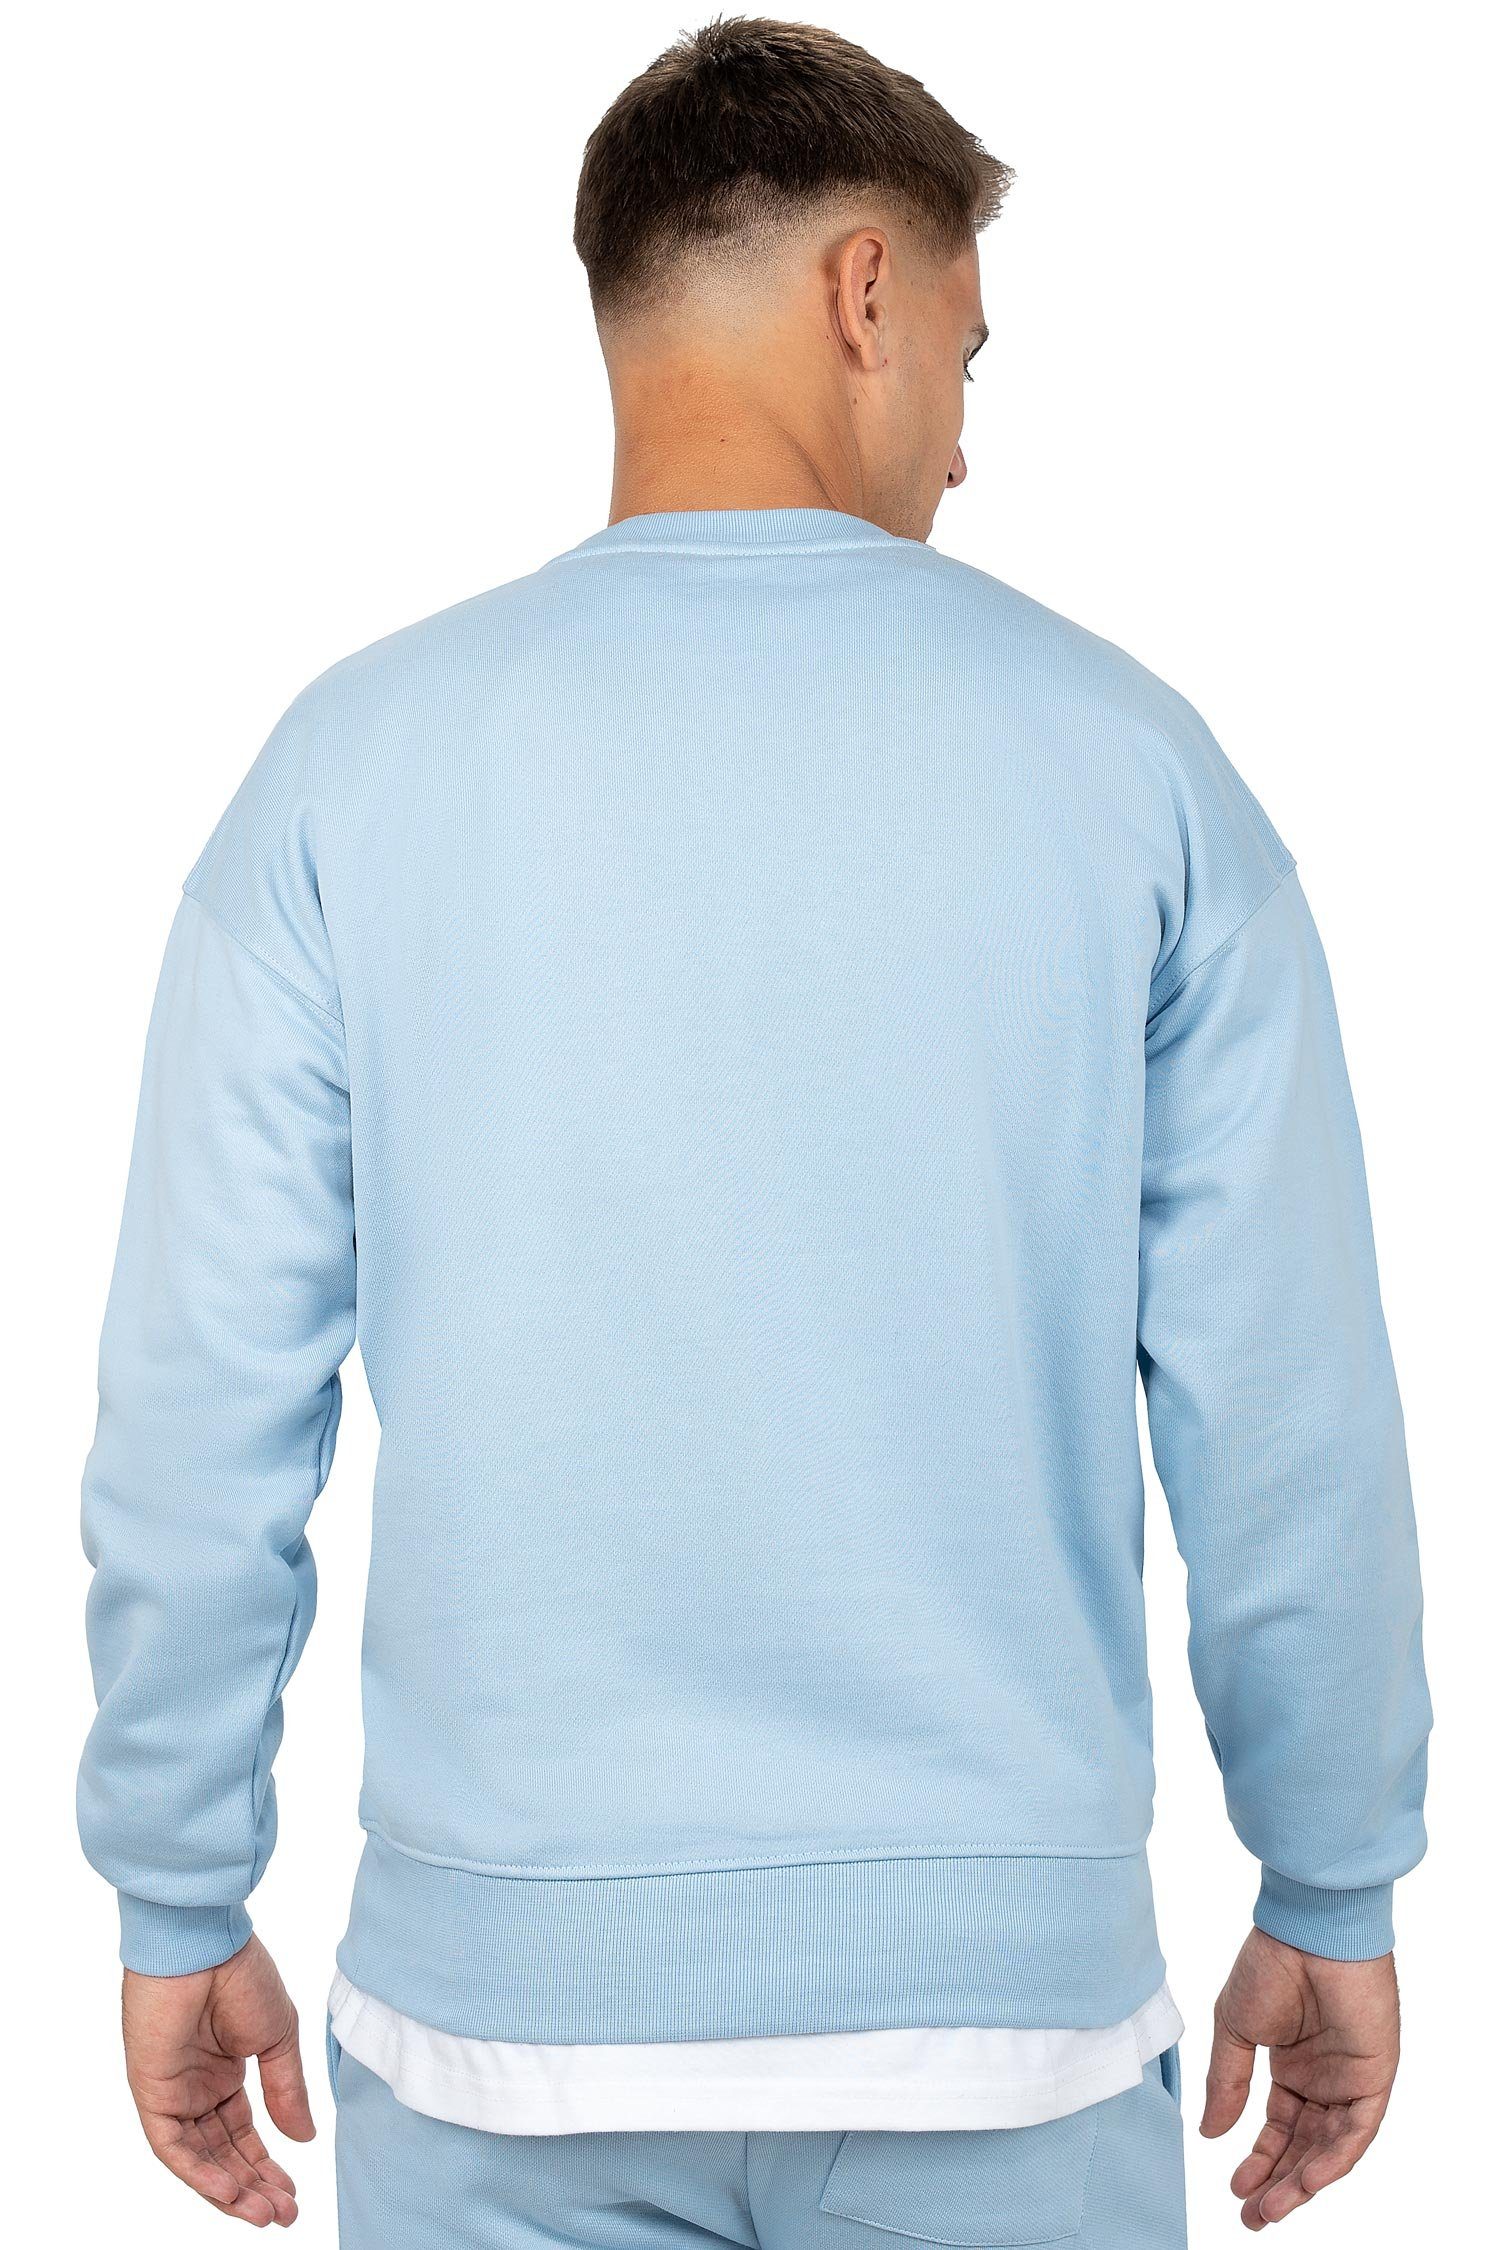 Reichstadt Sweatshirt Casual Basic Details Pullover 23RS037 Hellblau (1-tlg) mit Eleganten